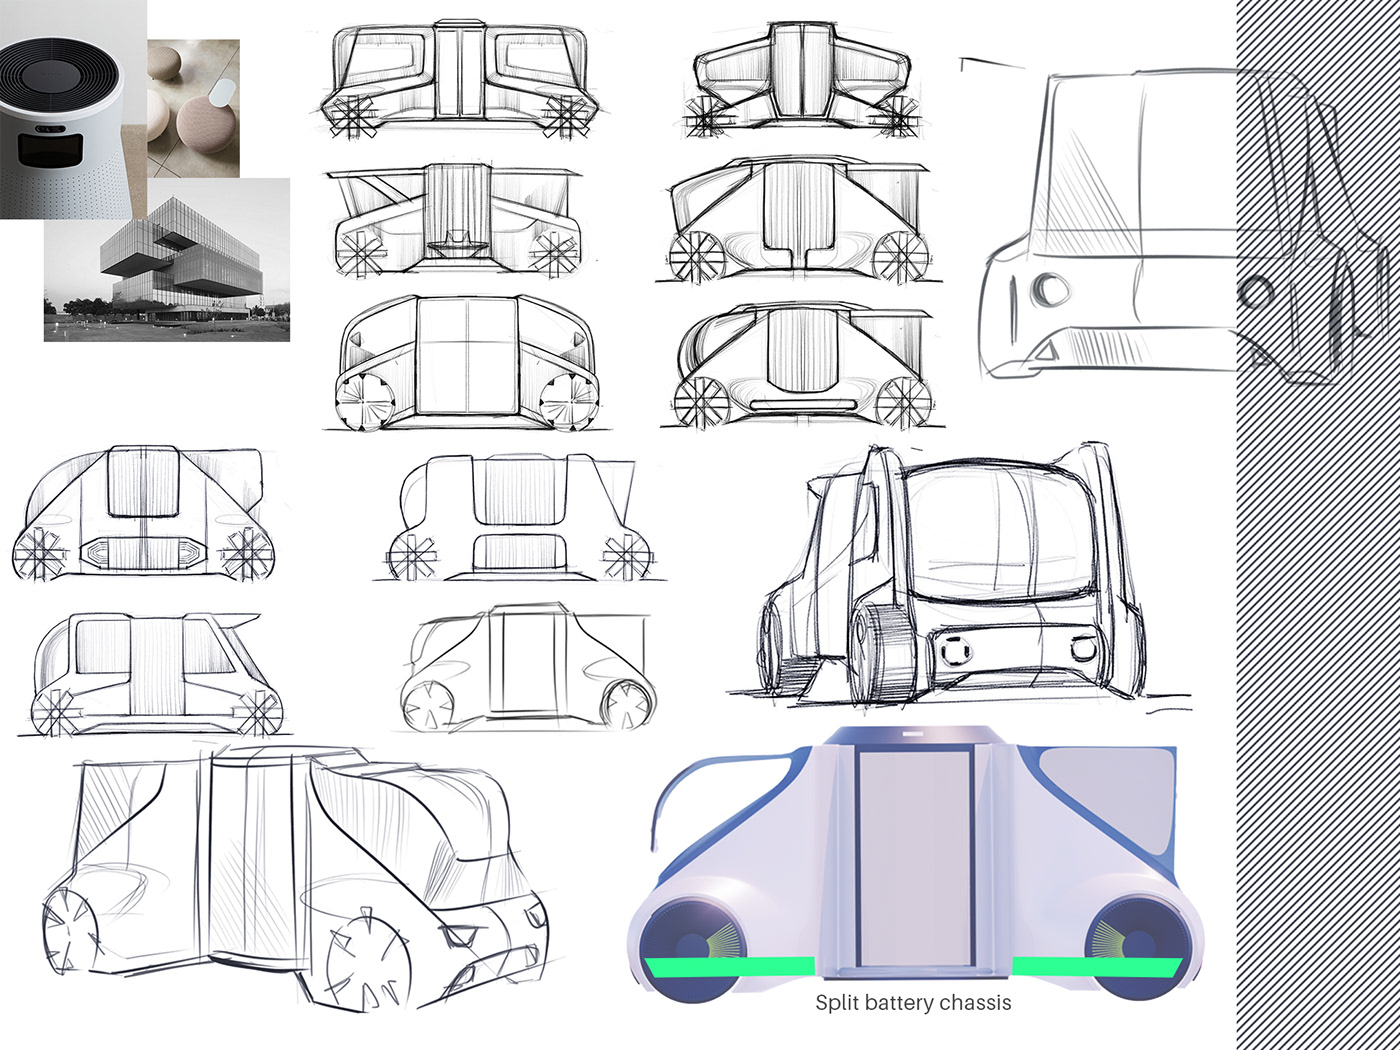 architecture Automotive design Autonomous car design future mobility industrial design  public transportation Shared Mobility Transportation Design Vehicle Design